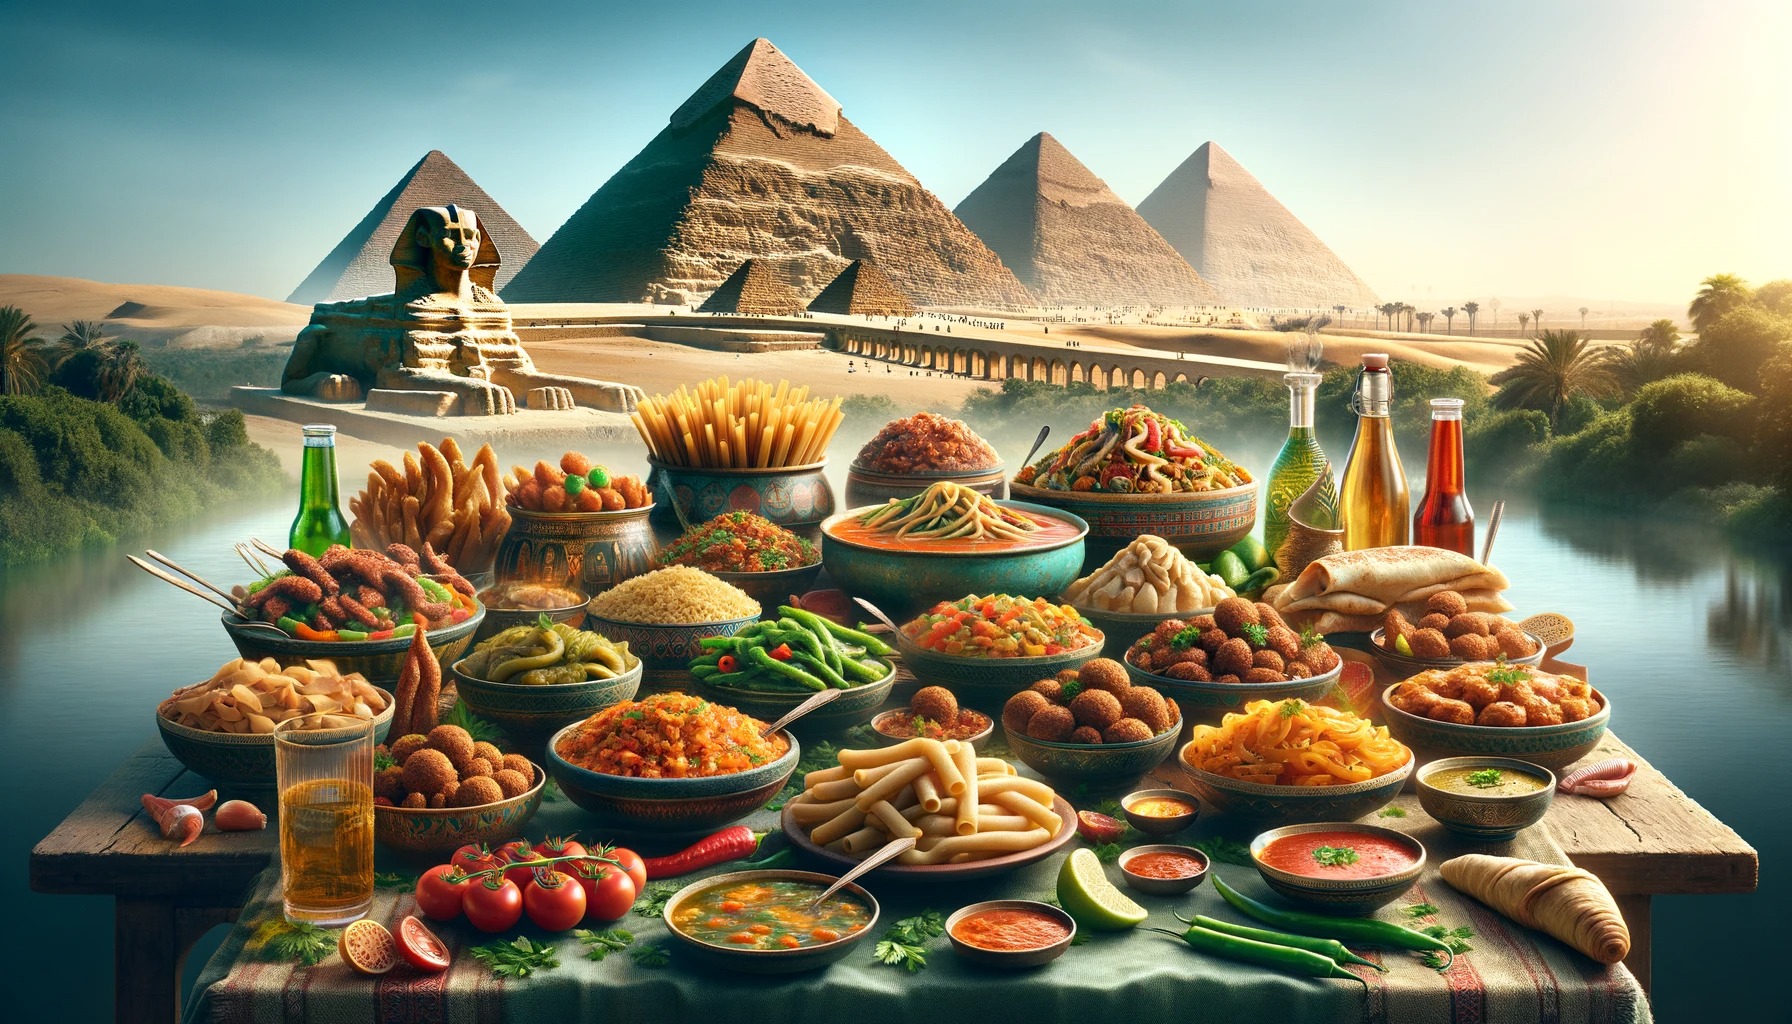 Egyiptom utazás: Kairó finomságai - OTP Travel Utazási Iroda